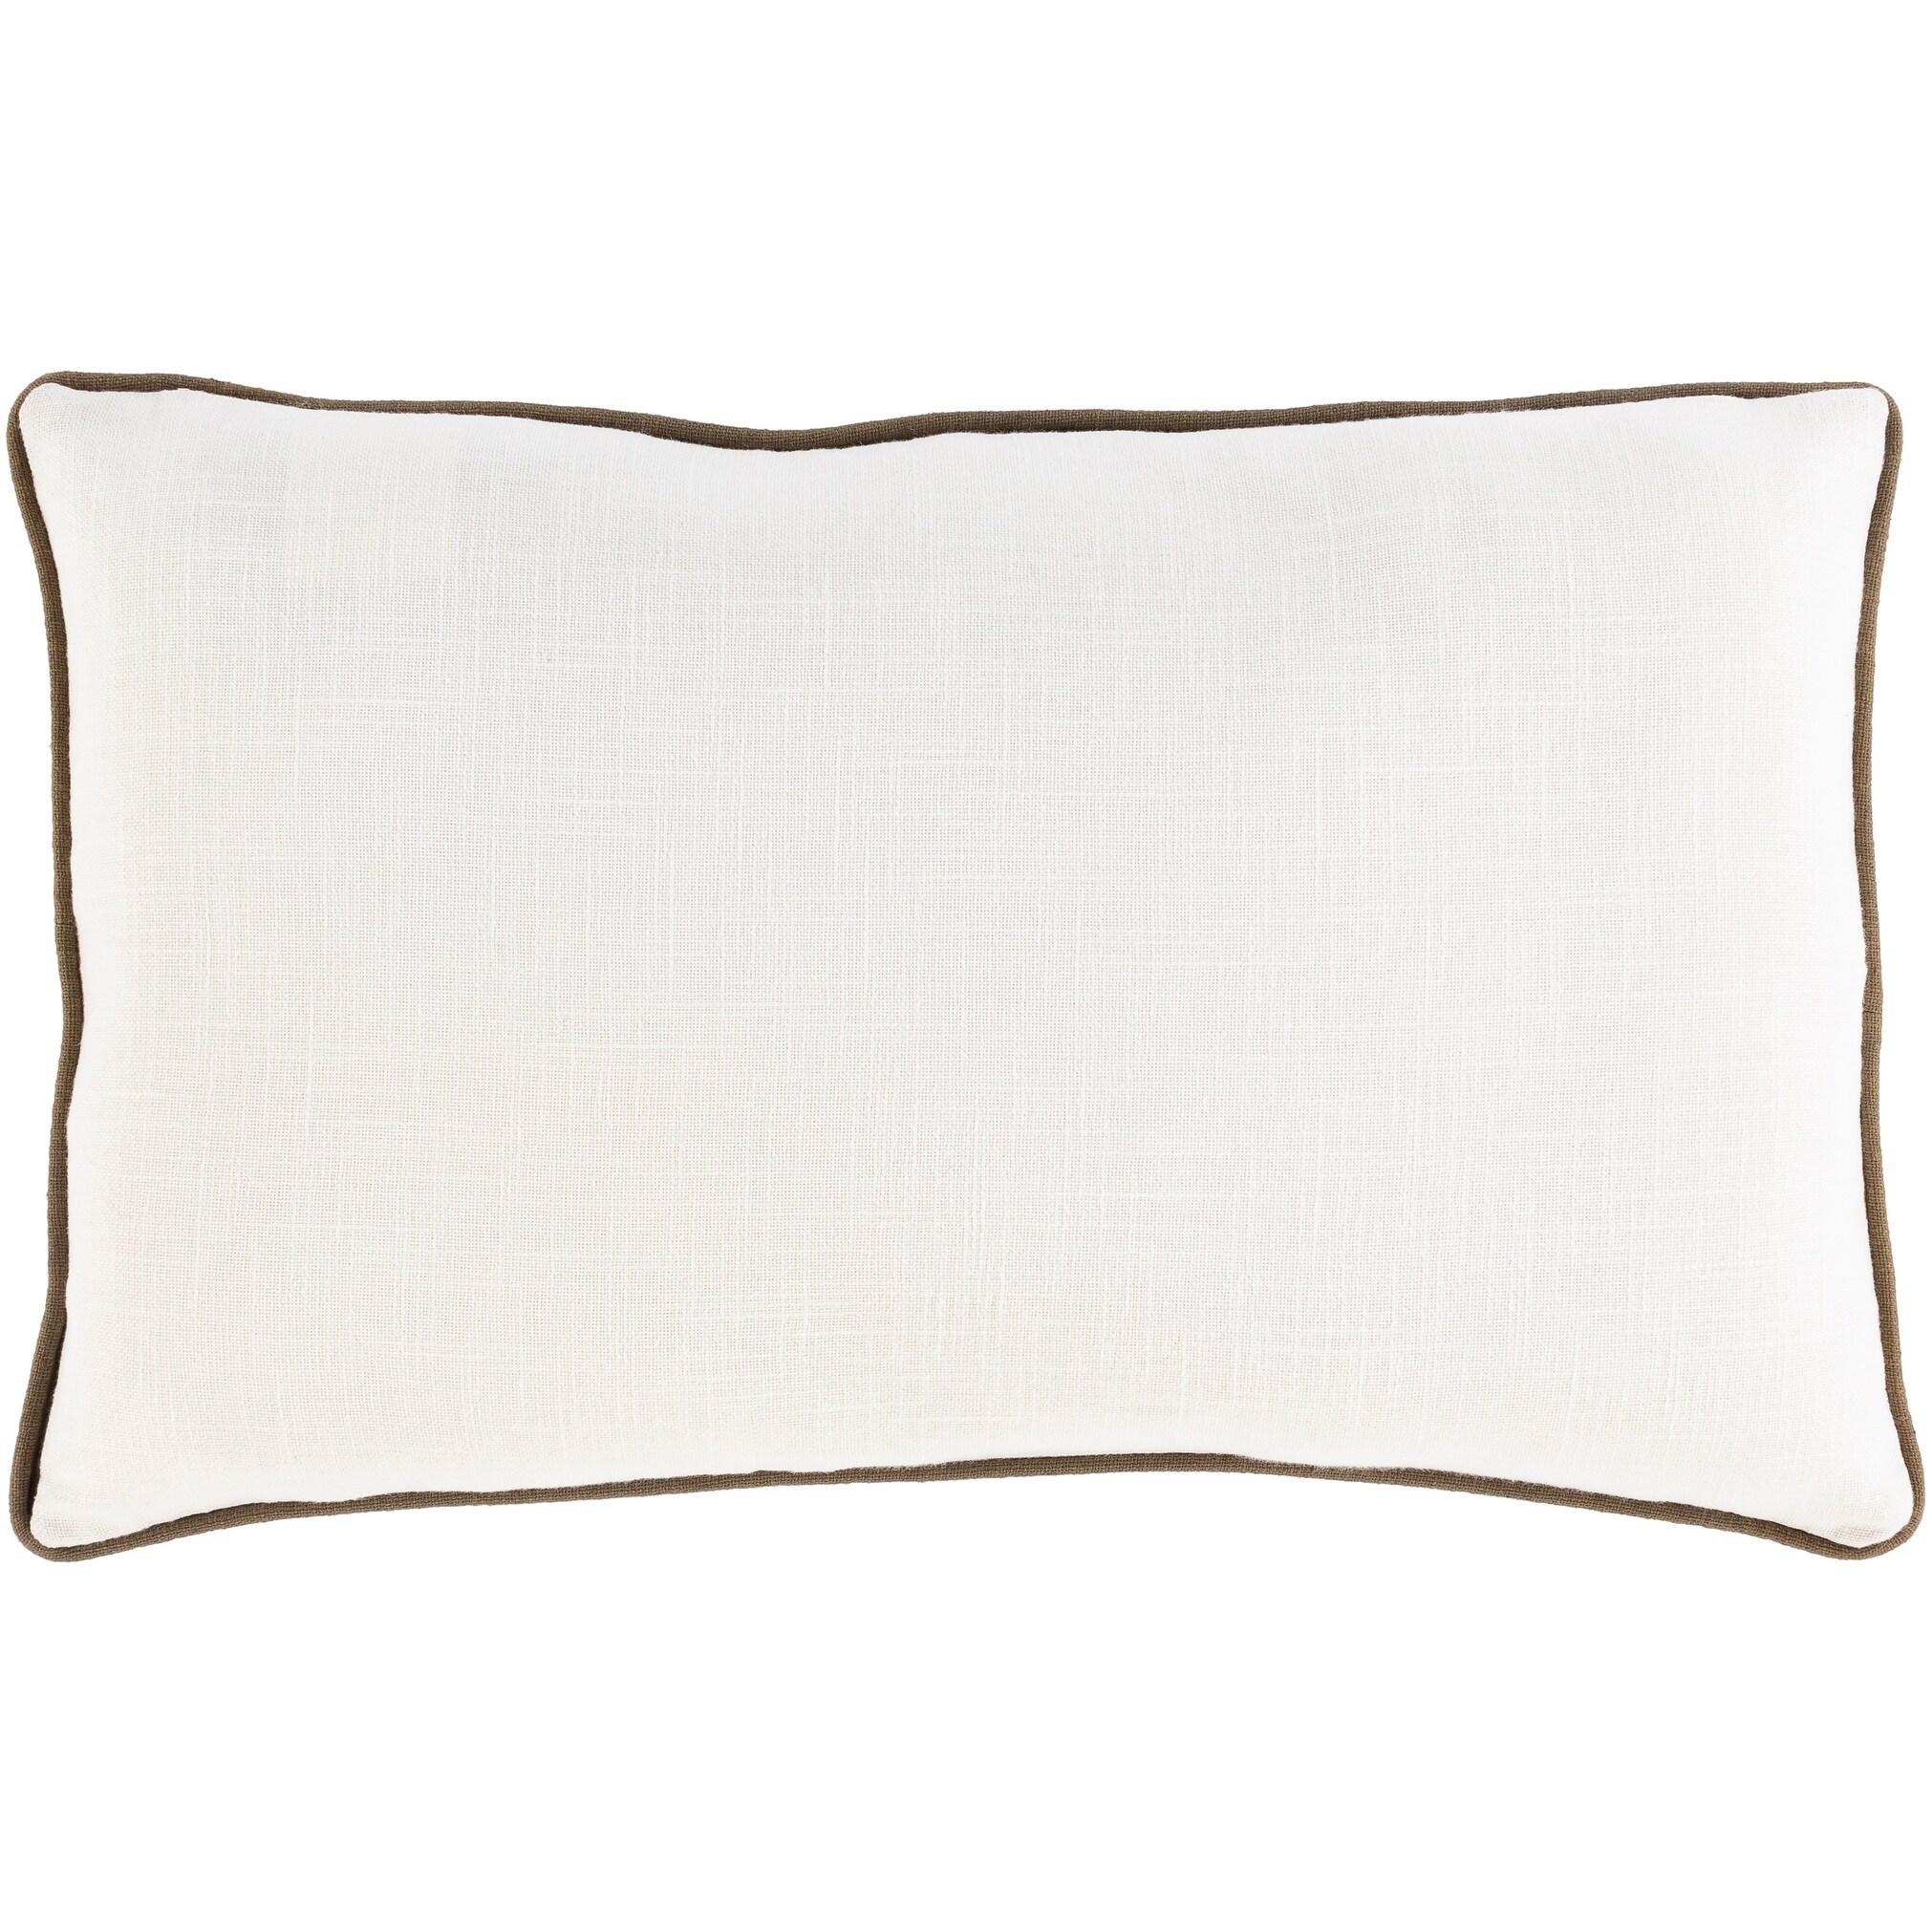 Jovan Embroidered Cotton Lumbar Throw Pillow